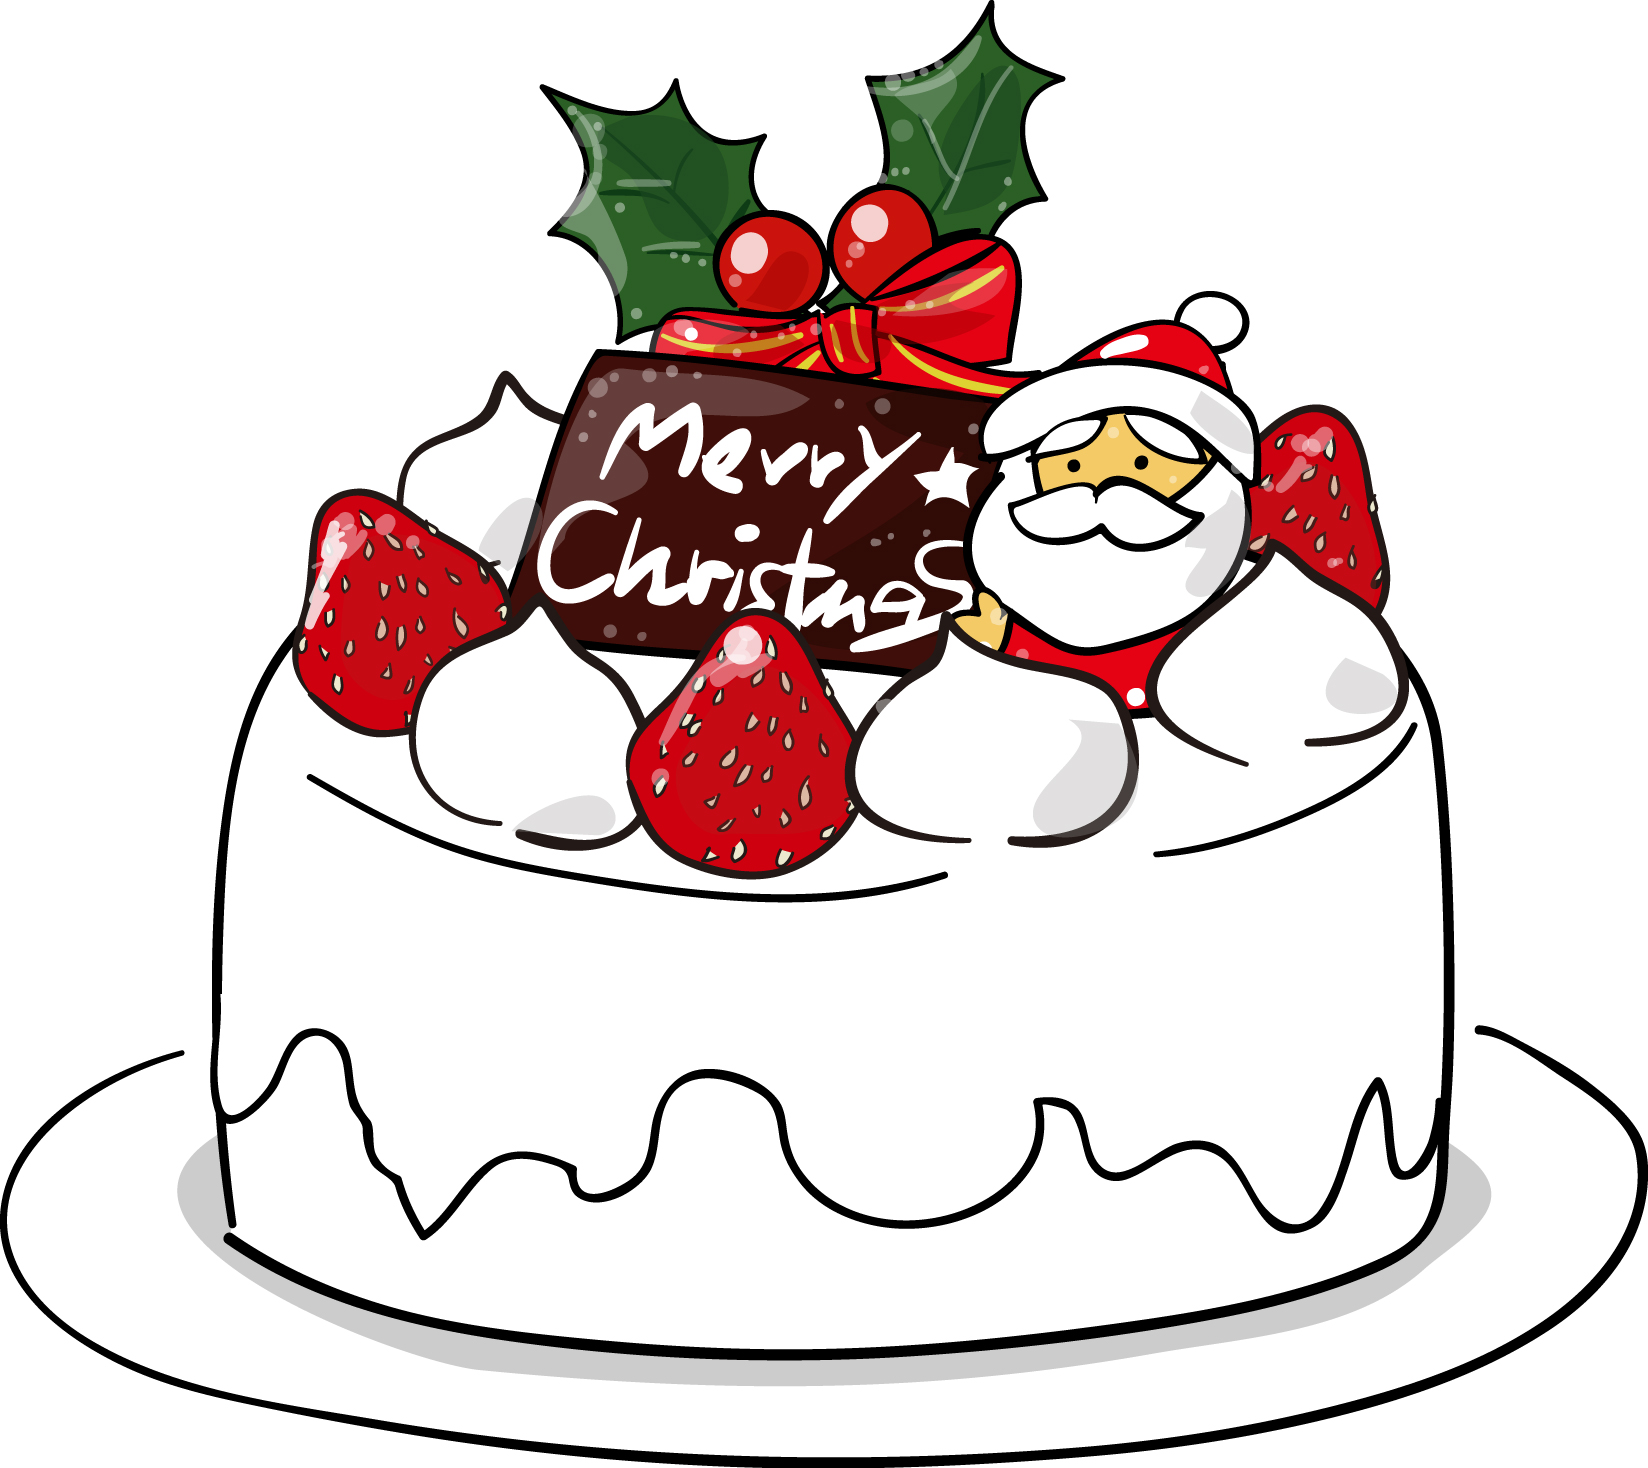 印刷素材 クリスマスケーキ ダウンロード かわいい無料イラスト 素材絵箱クリスマス館